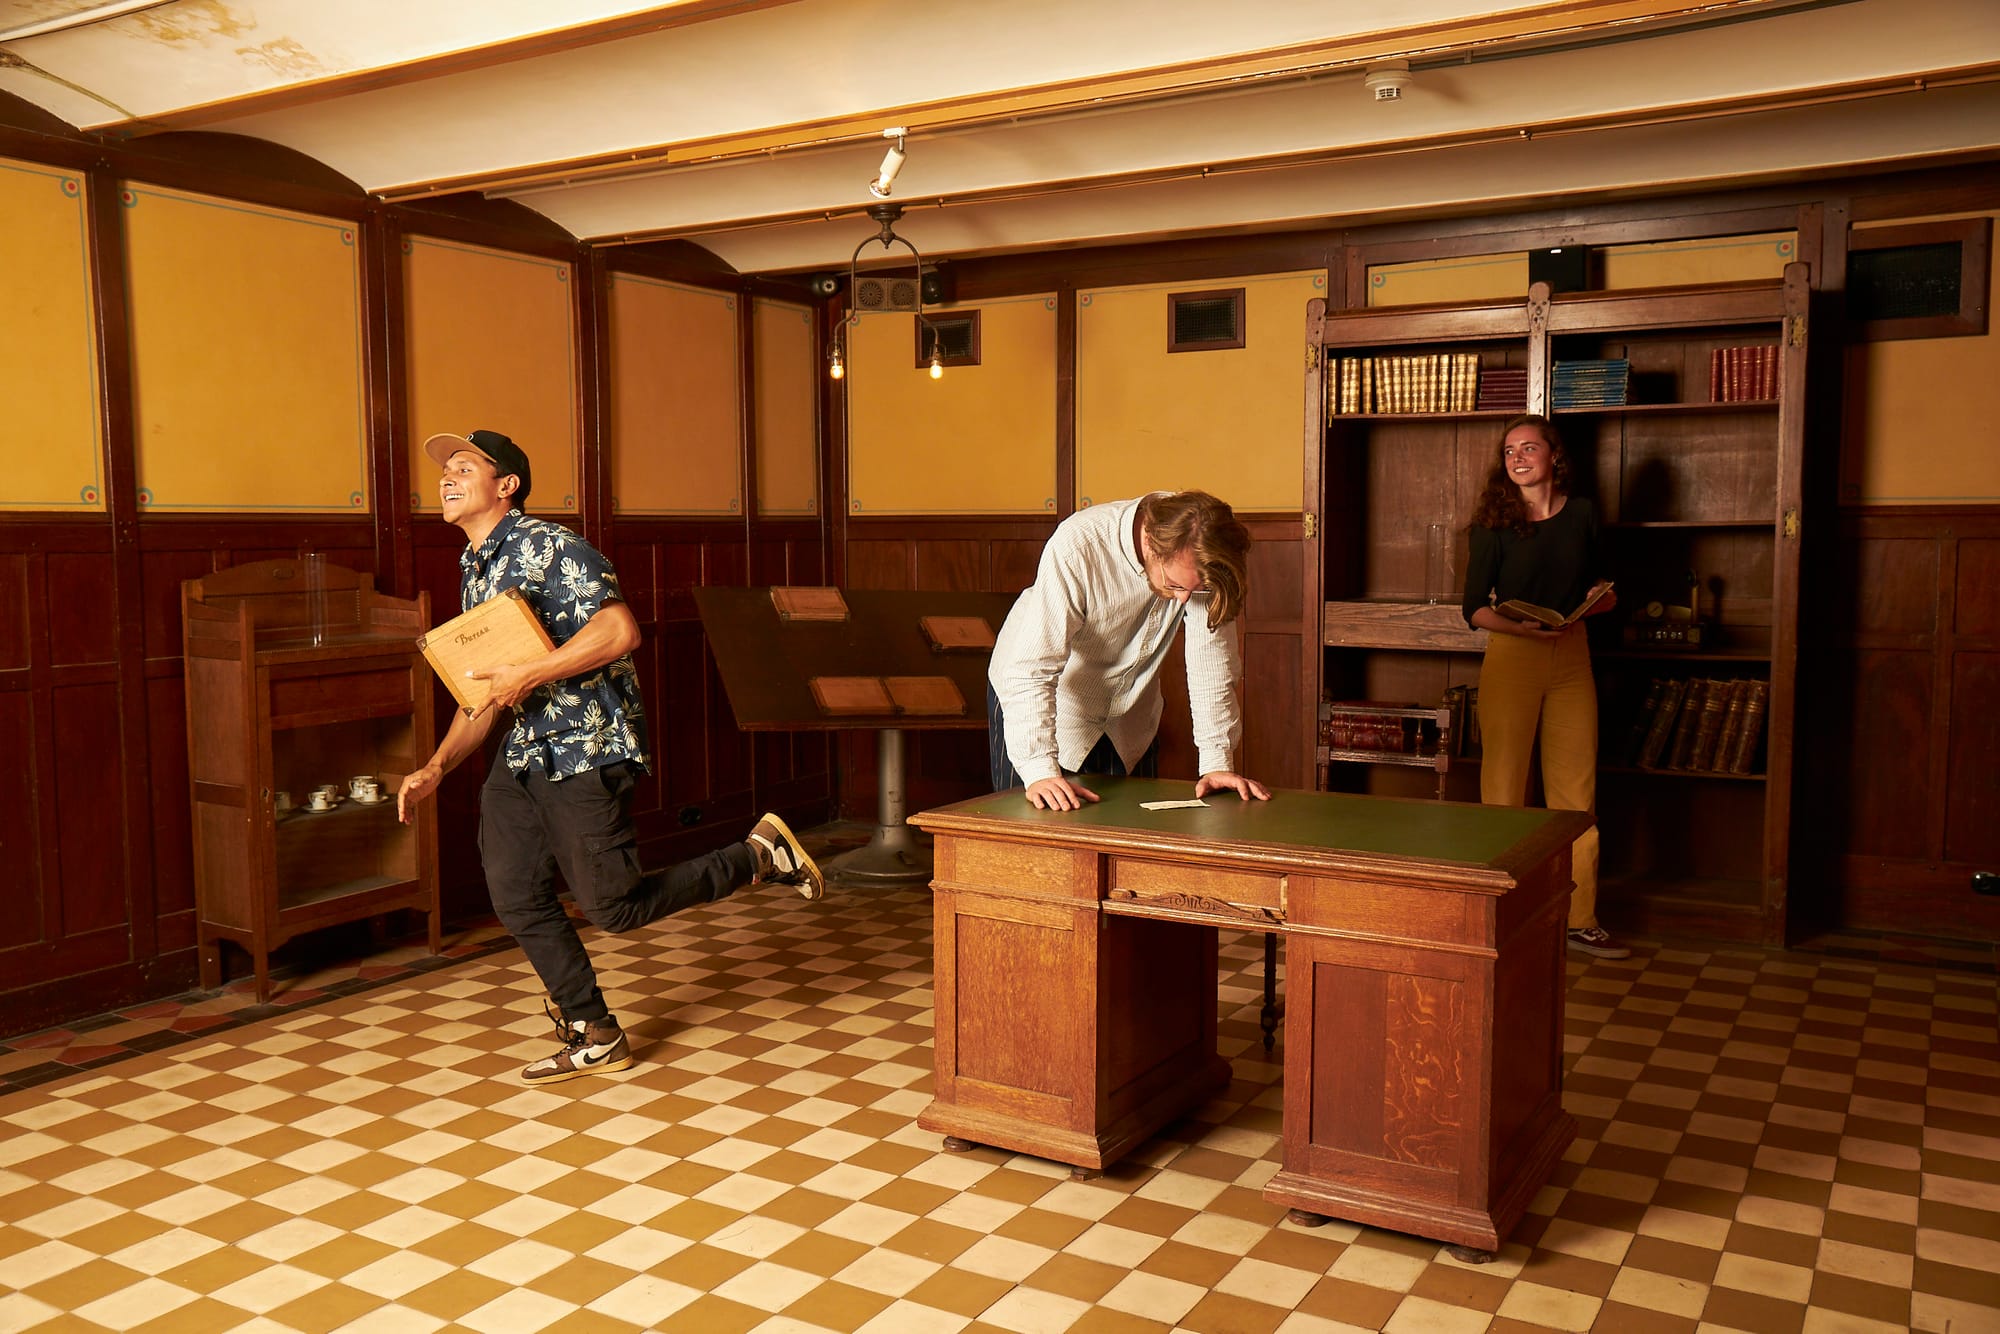 Sherlocked Escape Room Amsterdam Beurs van Berlage